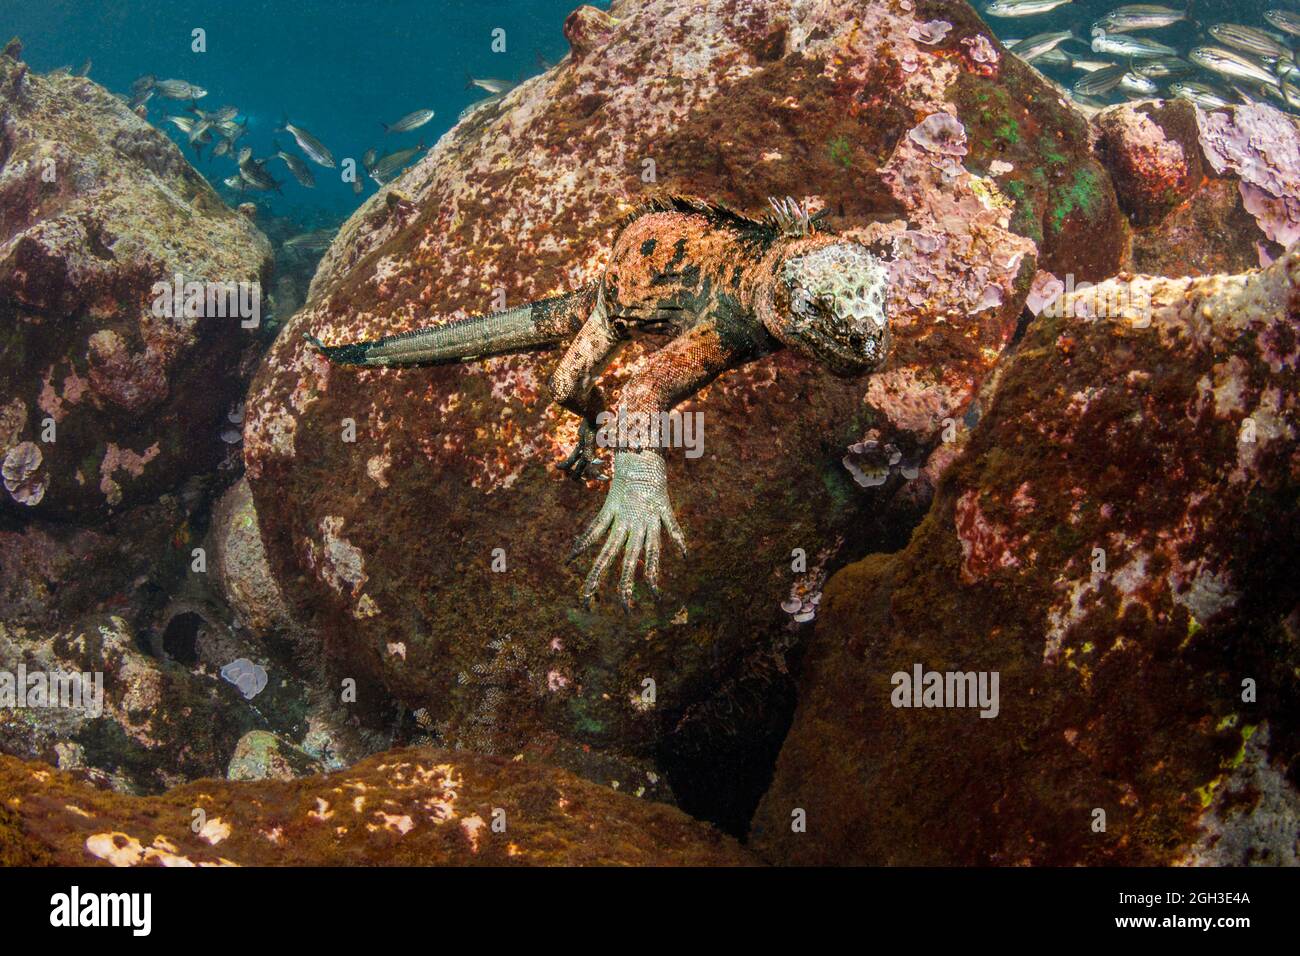 Questa iguana marina, Amblyrhynchus cristatus, è stata fotografata la caccia per una patch di alghe da munch su, Isole Santa Fe, Isole Galapagos, Equador. Foto Stock